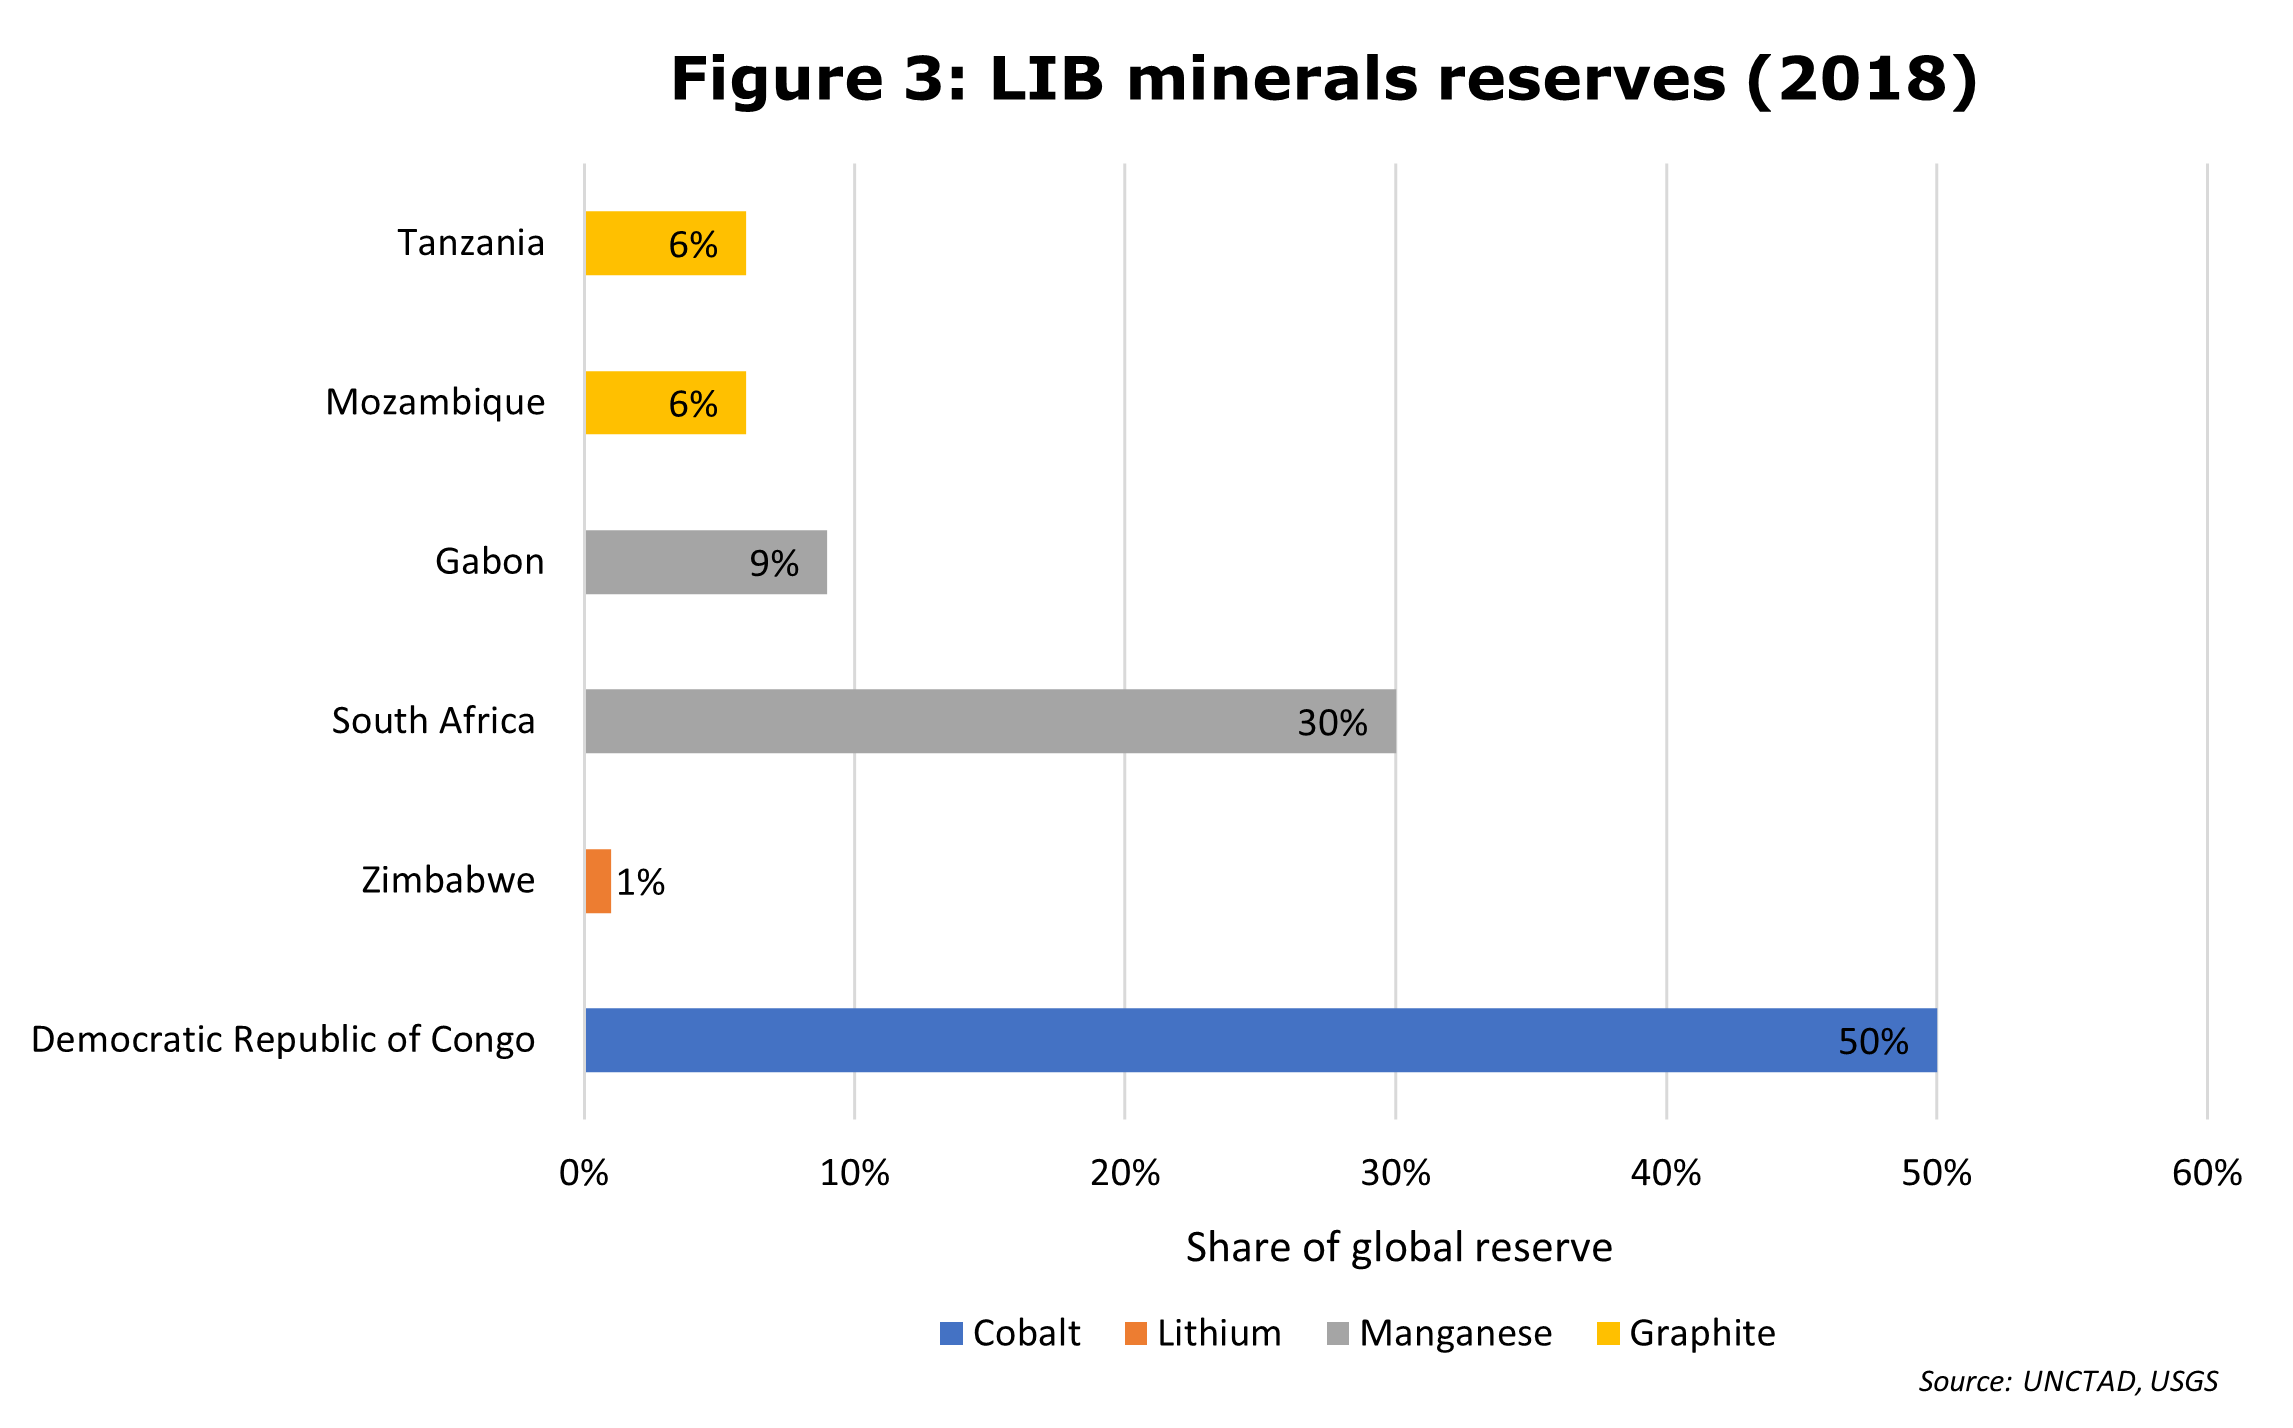 LIB minerals reserves